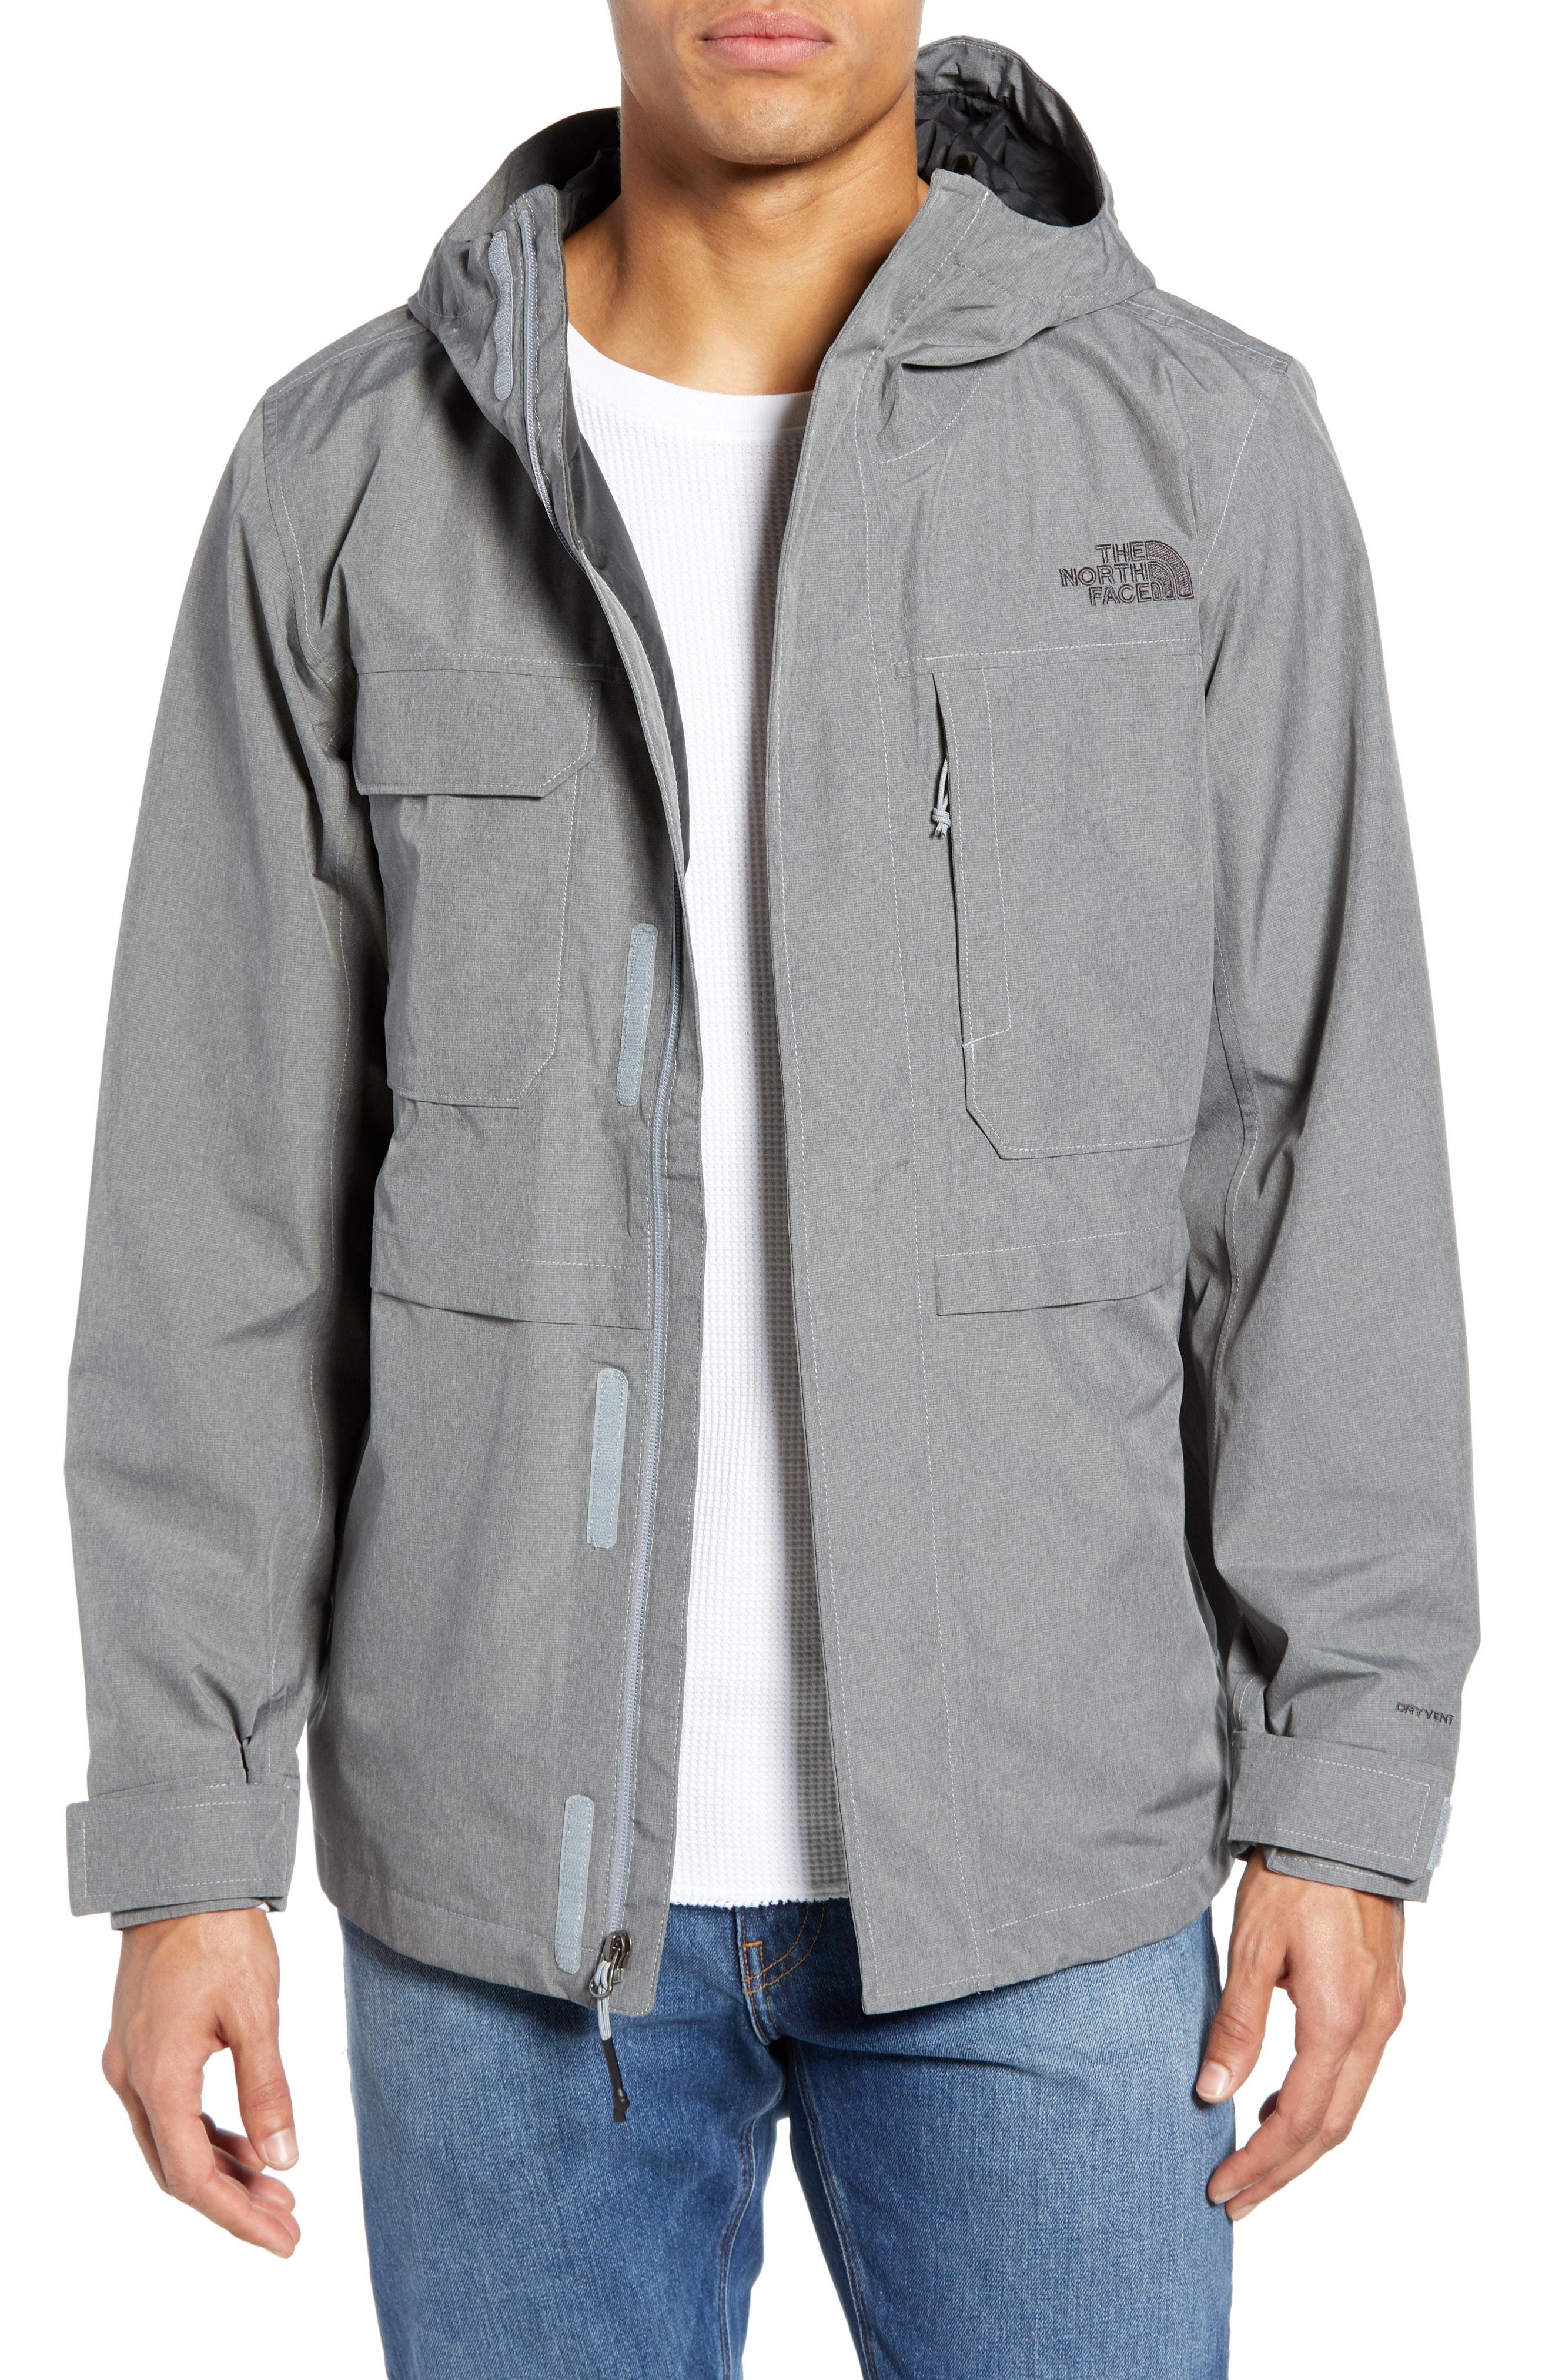 Zoomie Rain Jacket in Gray for Men - Lyst